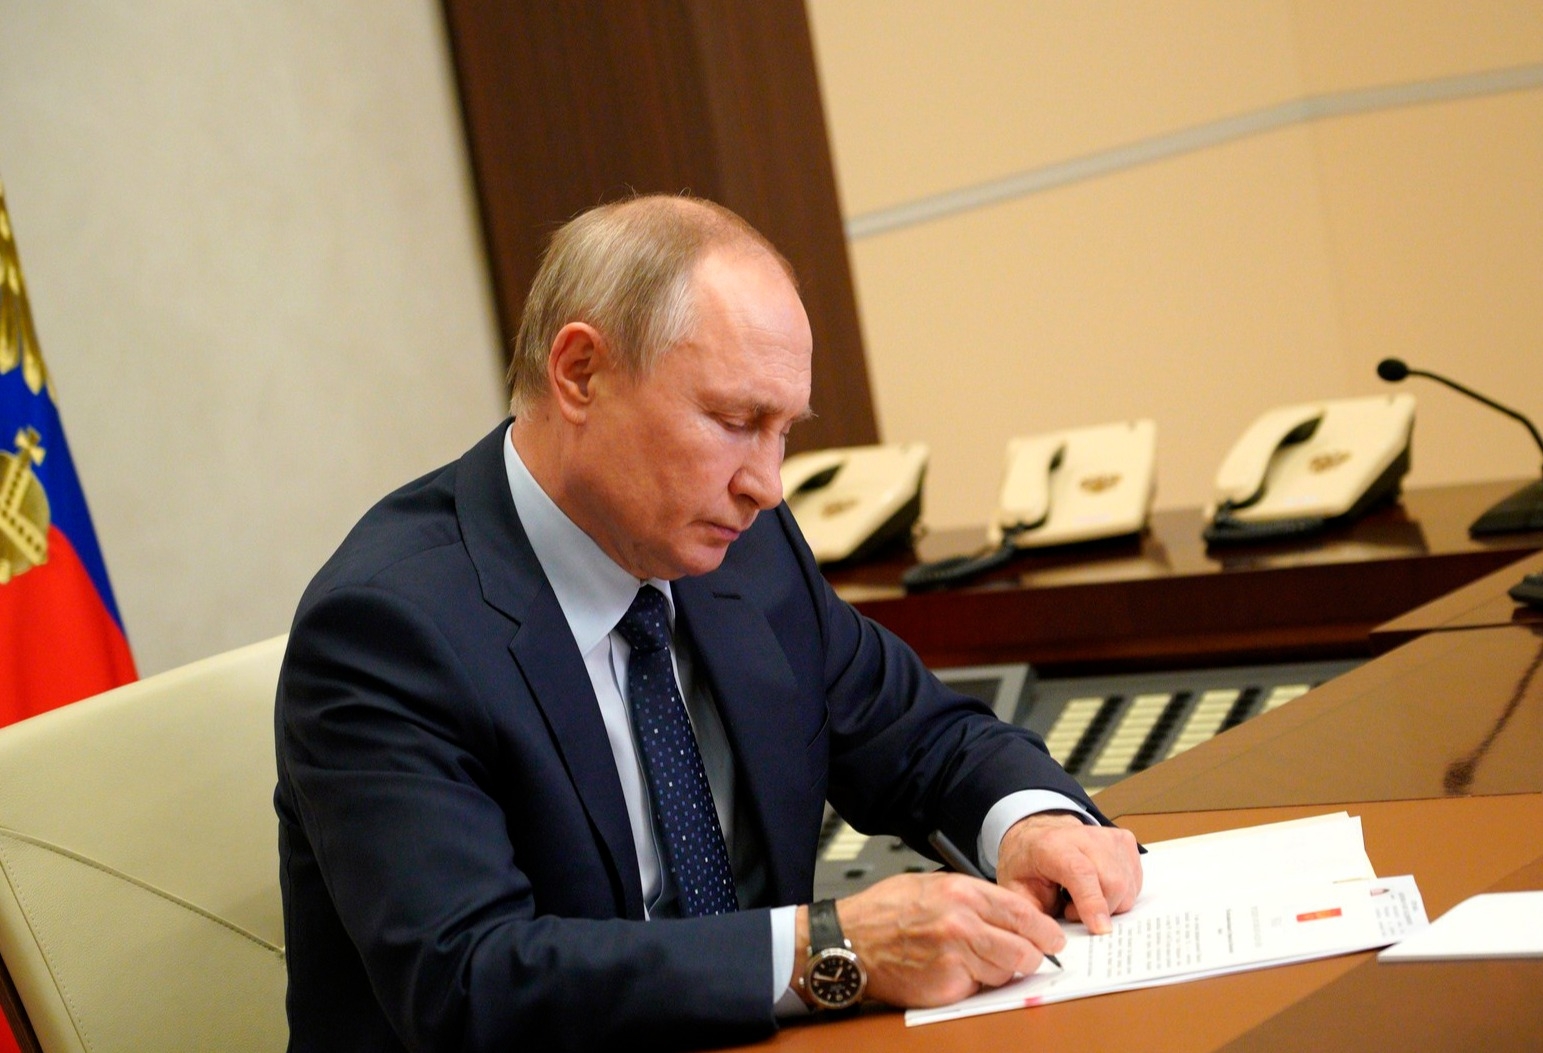 Песков: Путин пока не планирует уходить в отпуск и продолжает работу